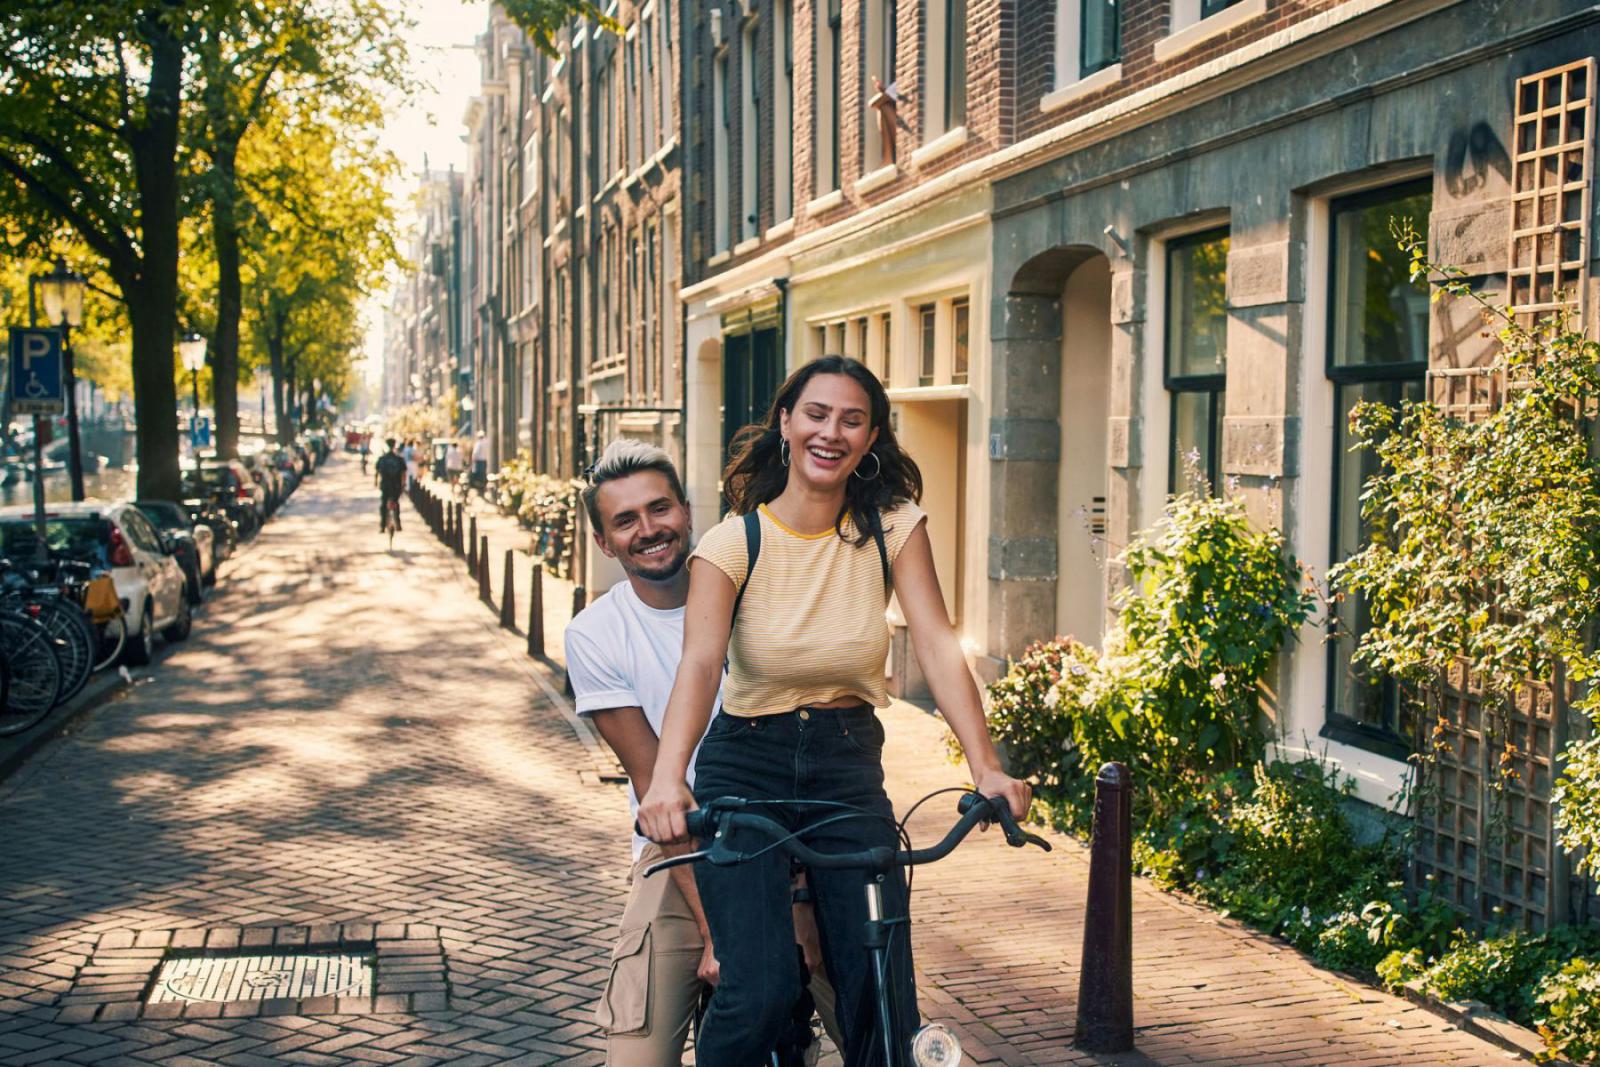 Fiets of wandel over de prachtige grachten van Amsterdam | iStock - pixdeluxe